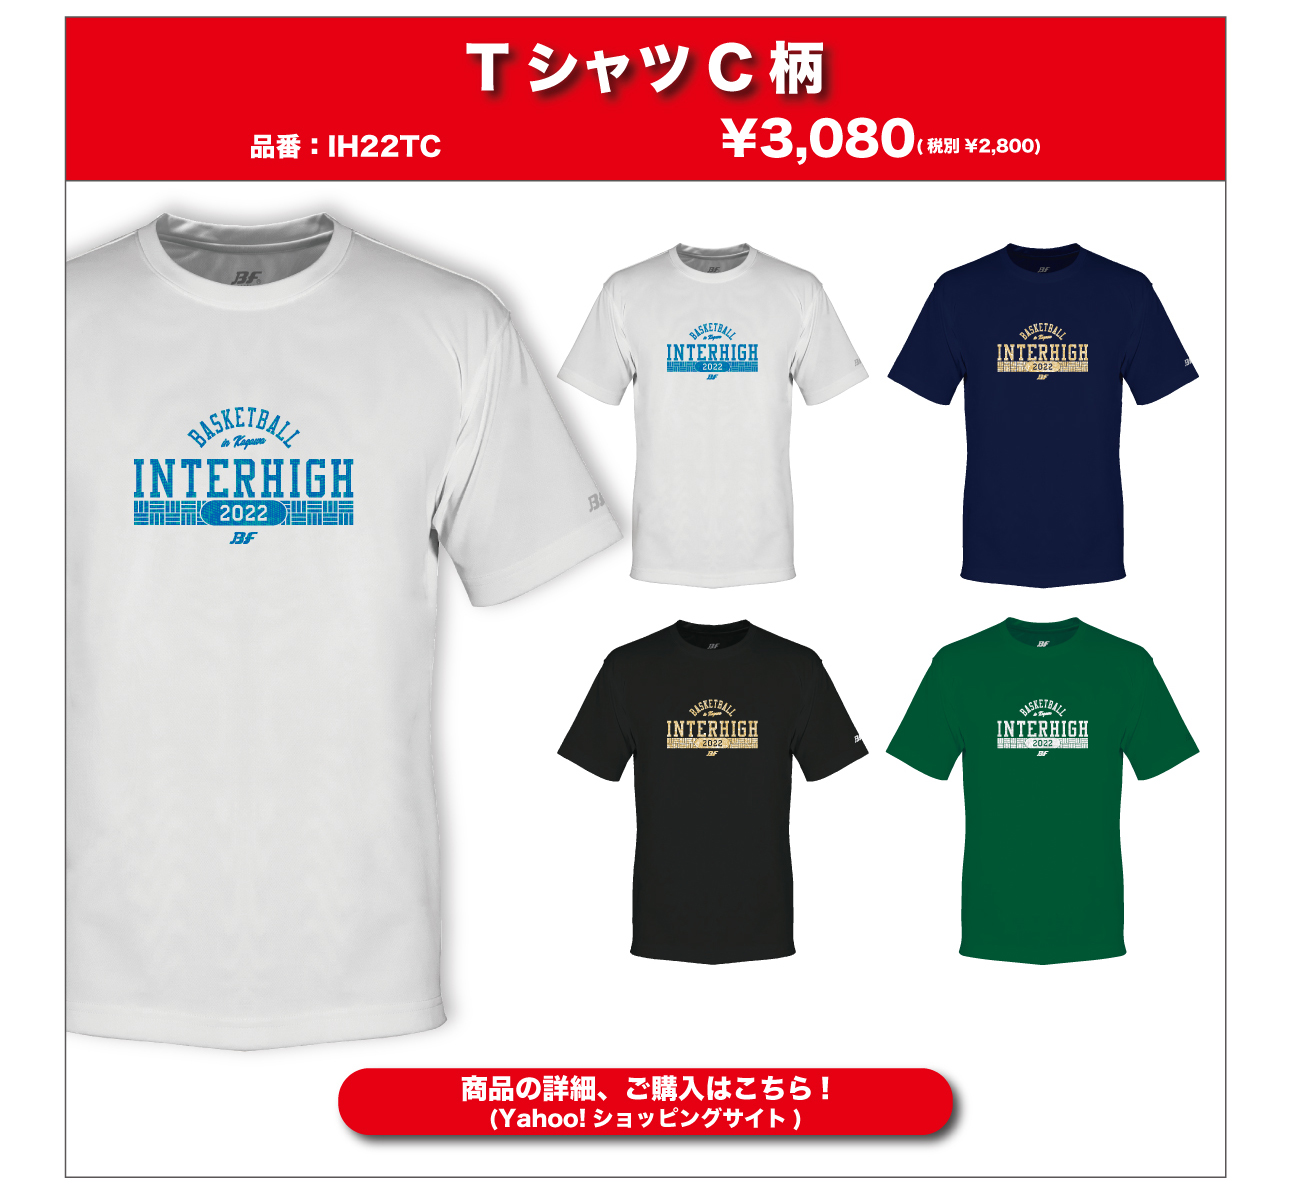 1950円 超定番 インターハイTシャツ